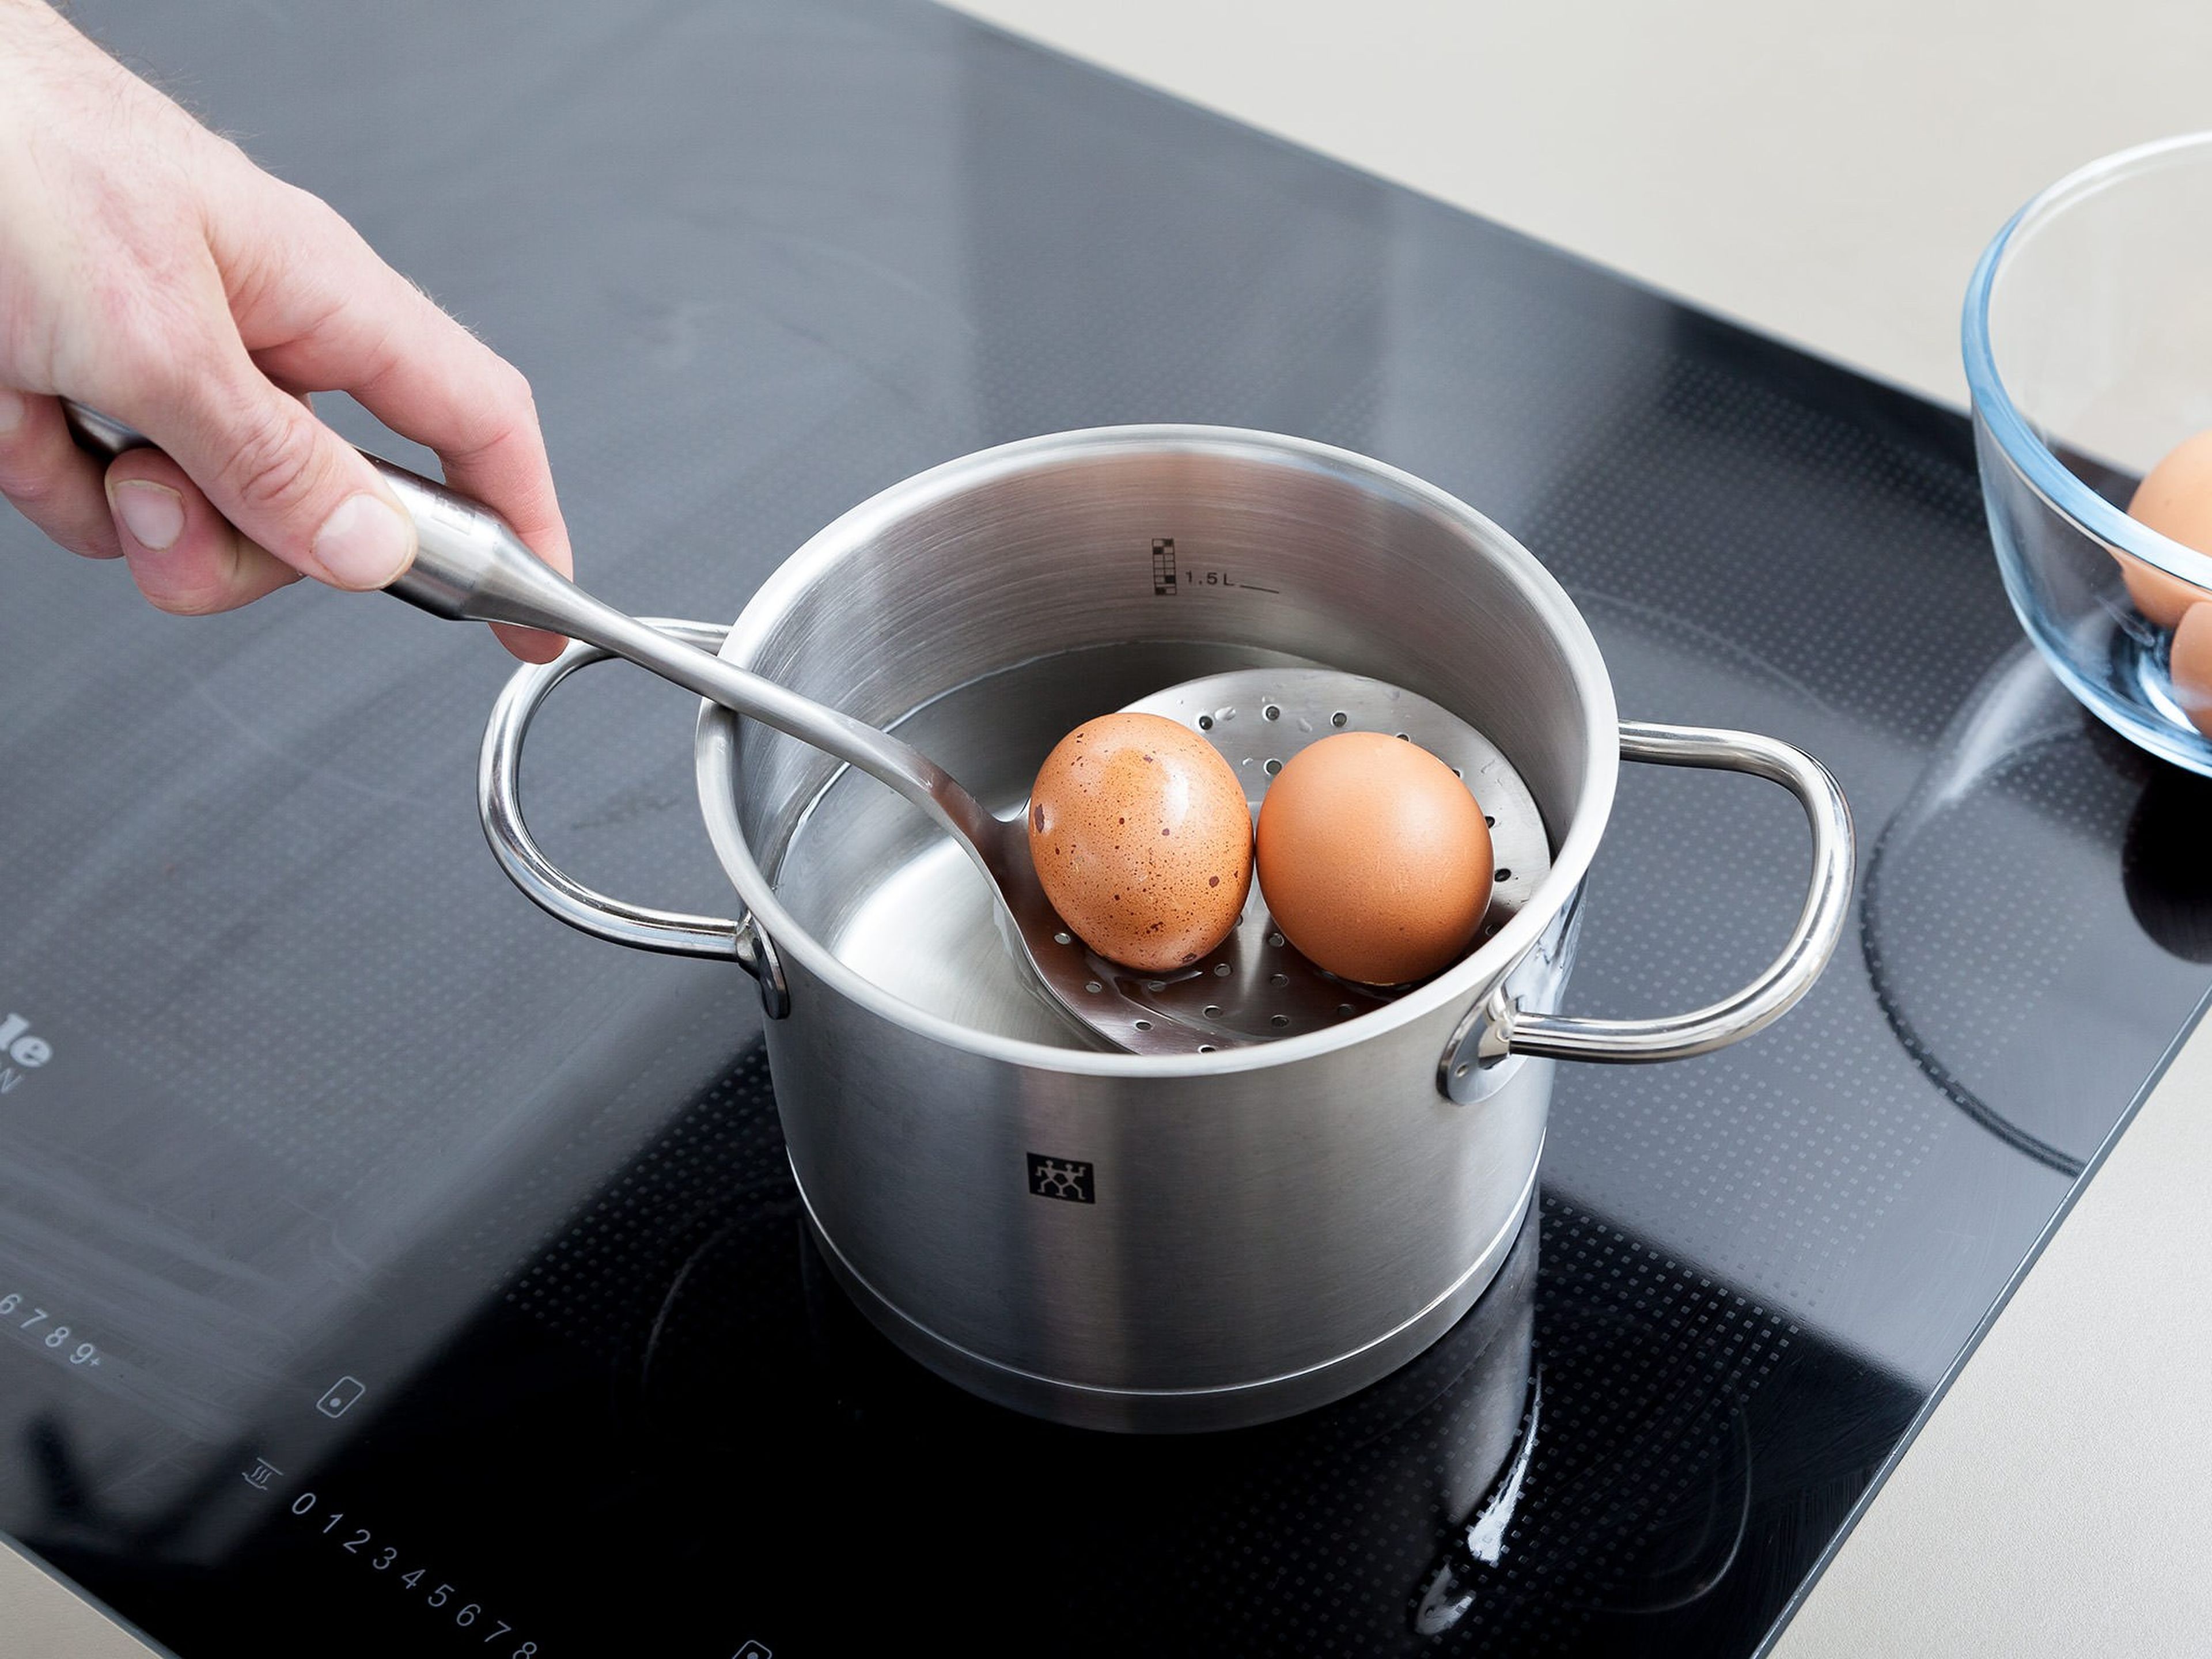 Eier in einen kleinen Topf mit Wasser geben und aufkochen lassen. Hitze reduzieren und die Eier über mittlerer Hitze ca. 8 - 10 Min. fest kochen. Abgießen und abkühlen lassen. Danach Eier schälen und klein schneiden.